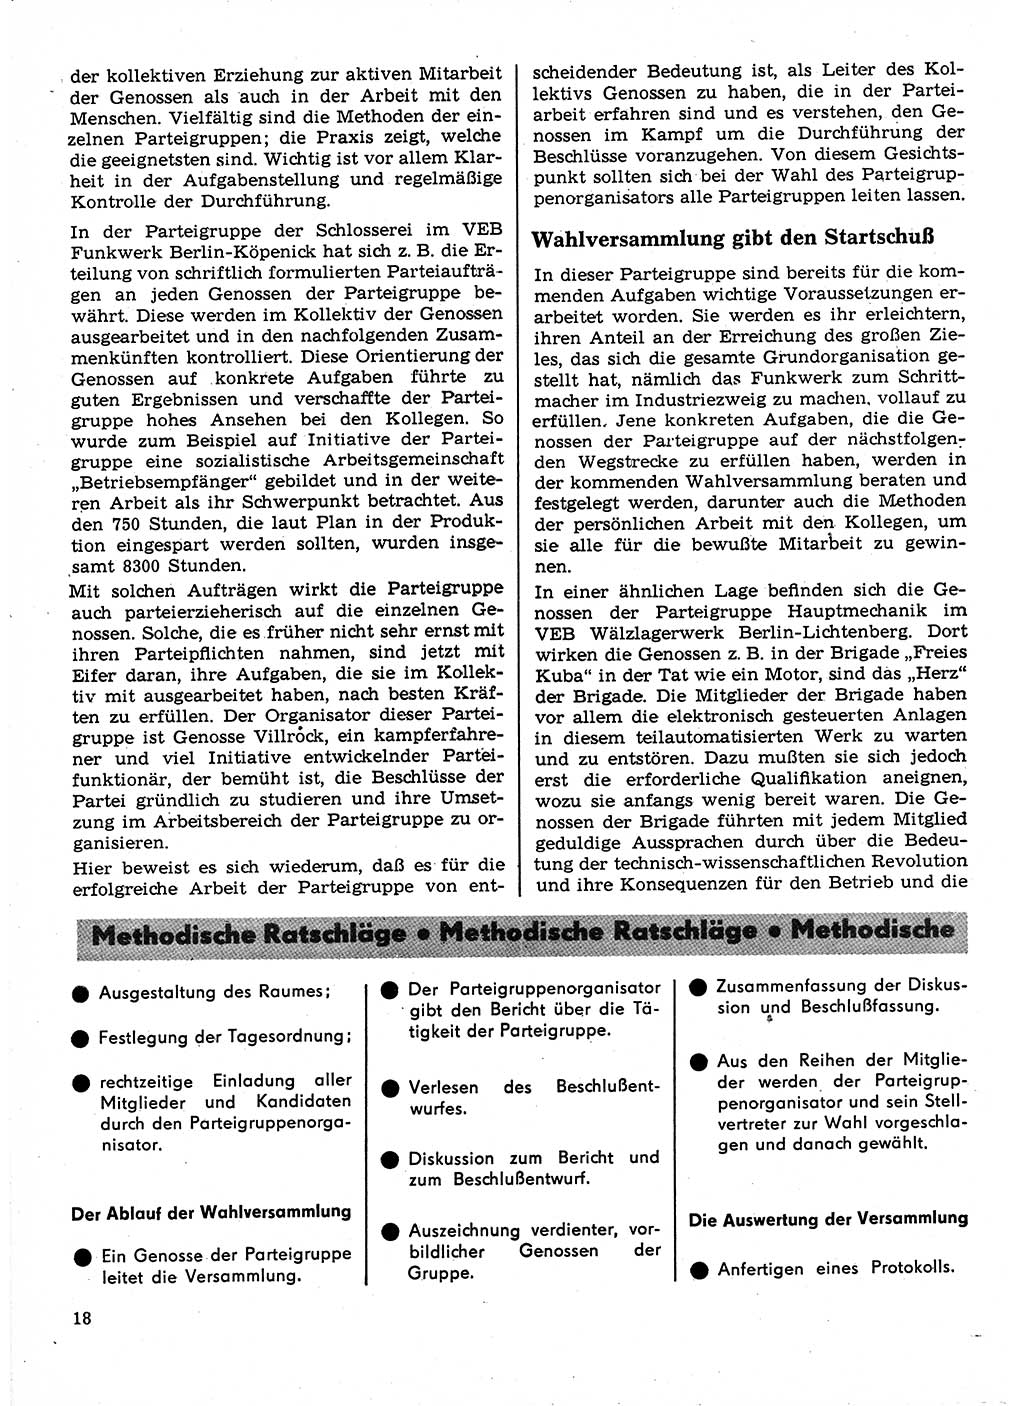 Neuer Weg (NW), Organ des Zentralkomitees (ZK) der SED (Sozialistische Einheitspartei Deutschlands) für Fragen des Parteilebens, 23. Jahrgang [Deutsche Demokratische Republik (DDR)] 1968, Seite 18 (NW ZK SED DDR 1968, S. 18)